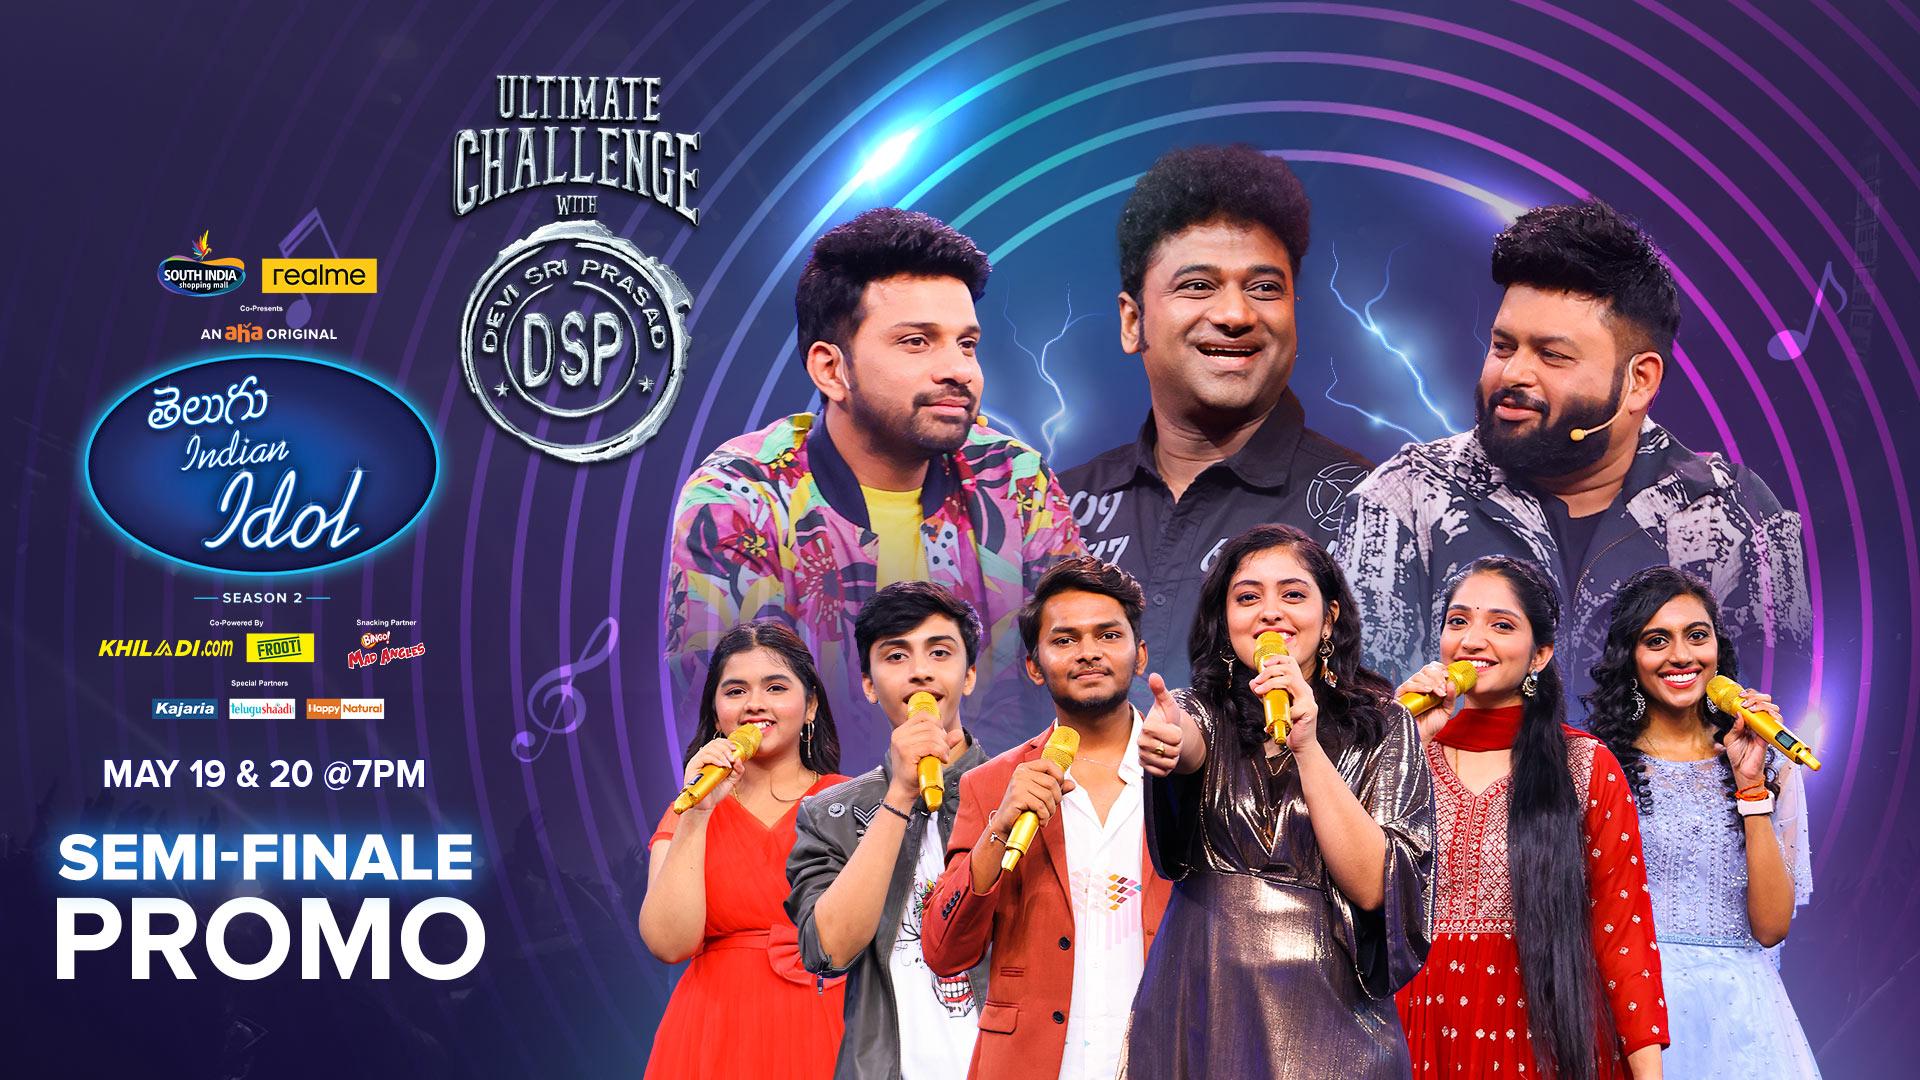 Watch Telugu Indian Idol Season 2 on aha in HD Quality Stream Now